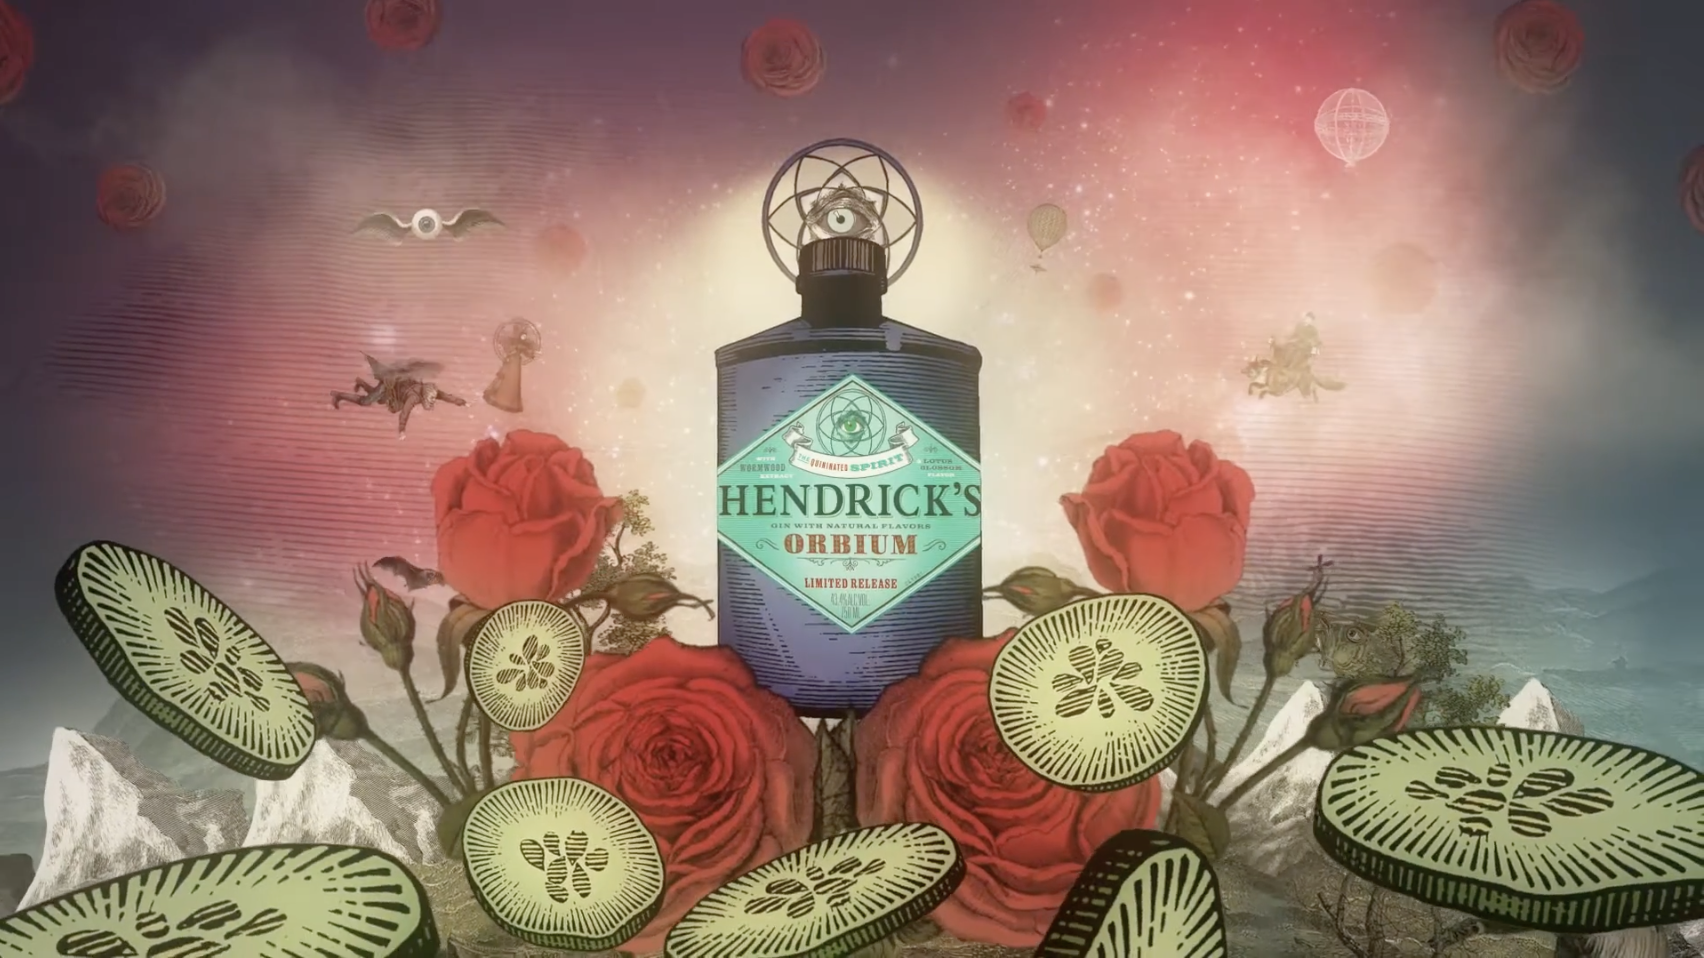 Hendrick's Orbium Gin - Unique Scottish Gin - Hendrick's Gin